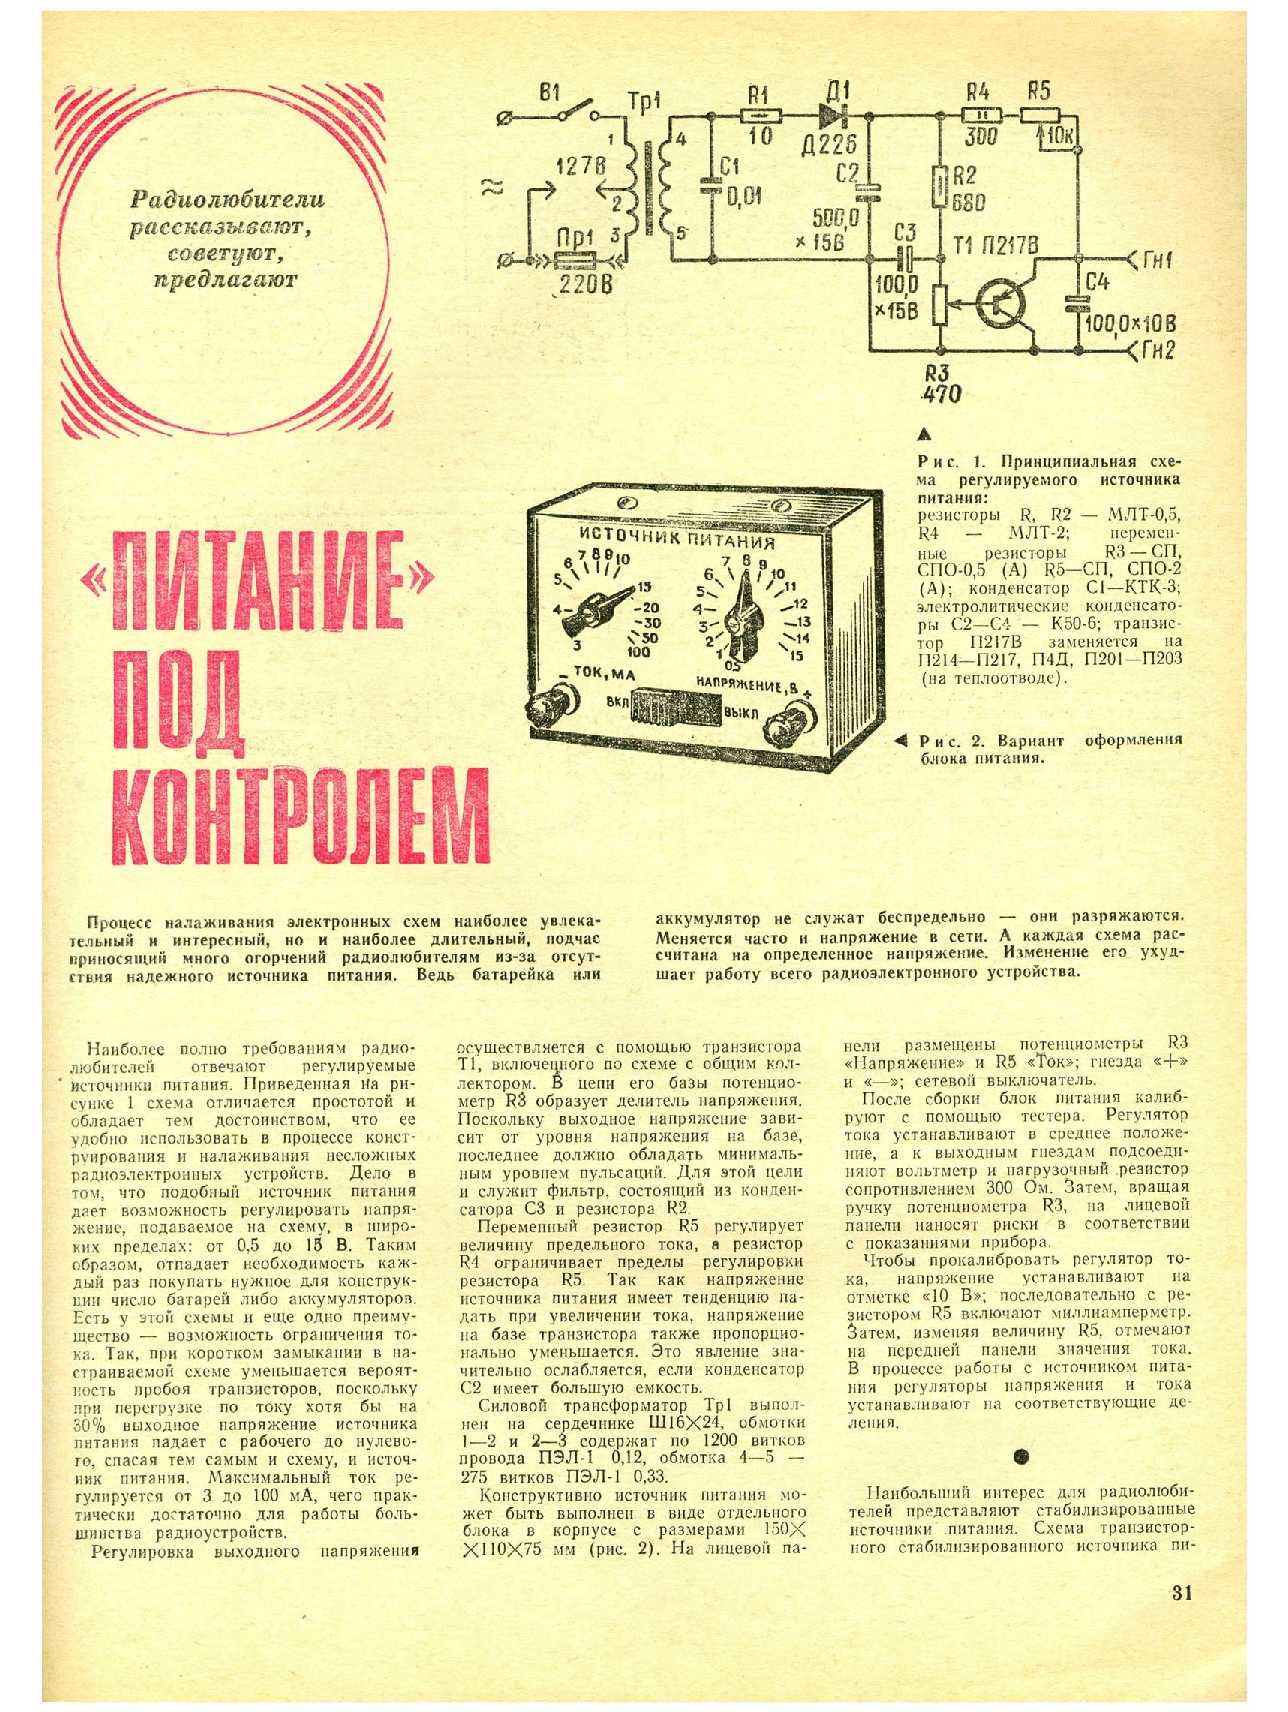 МК 5, 1974, 31 c.